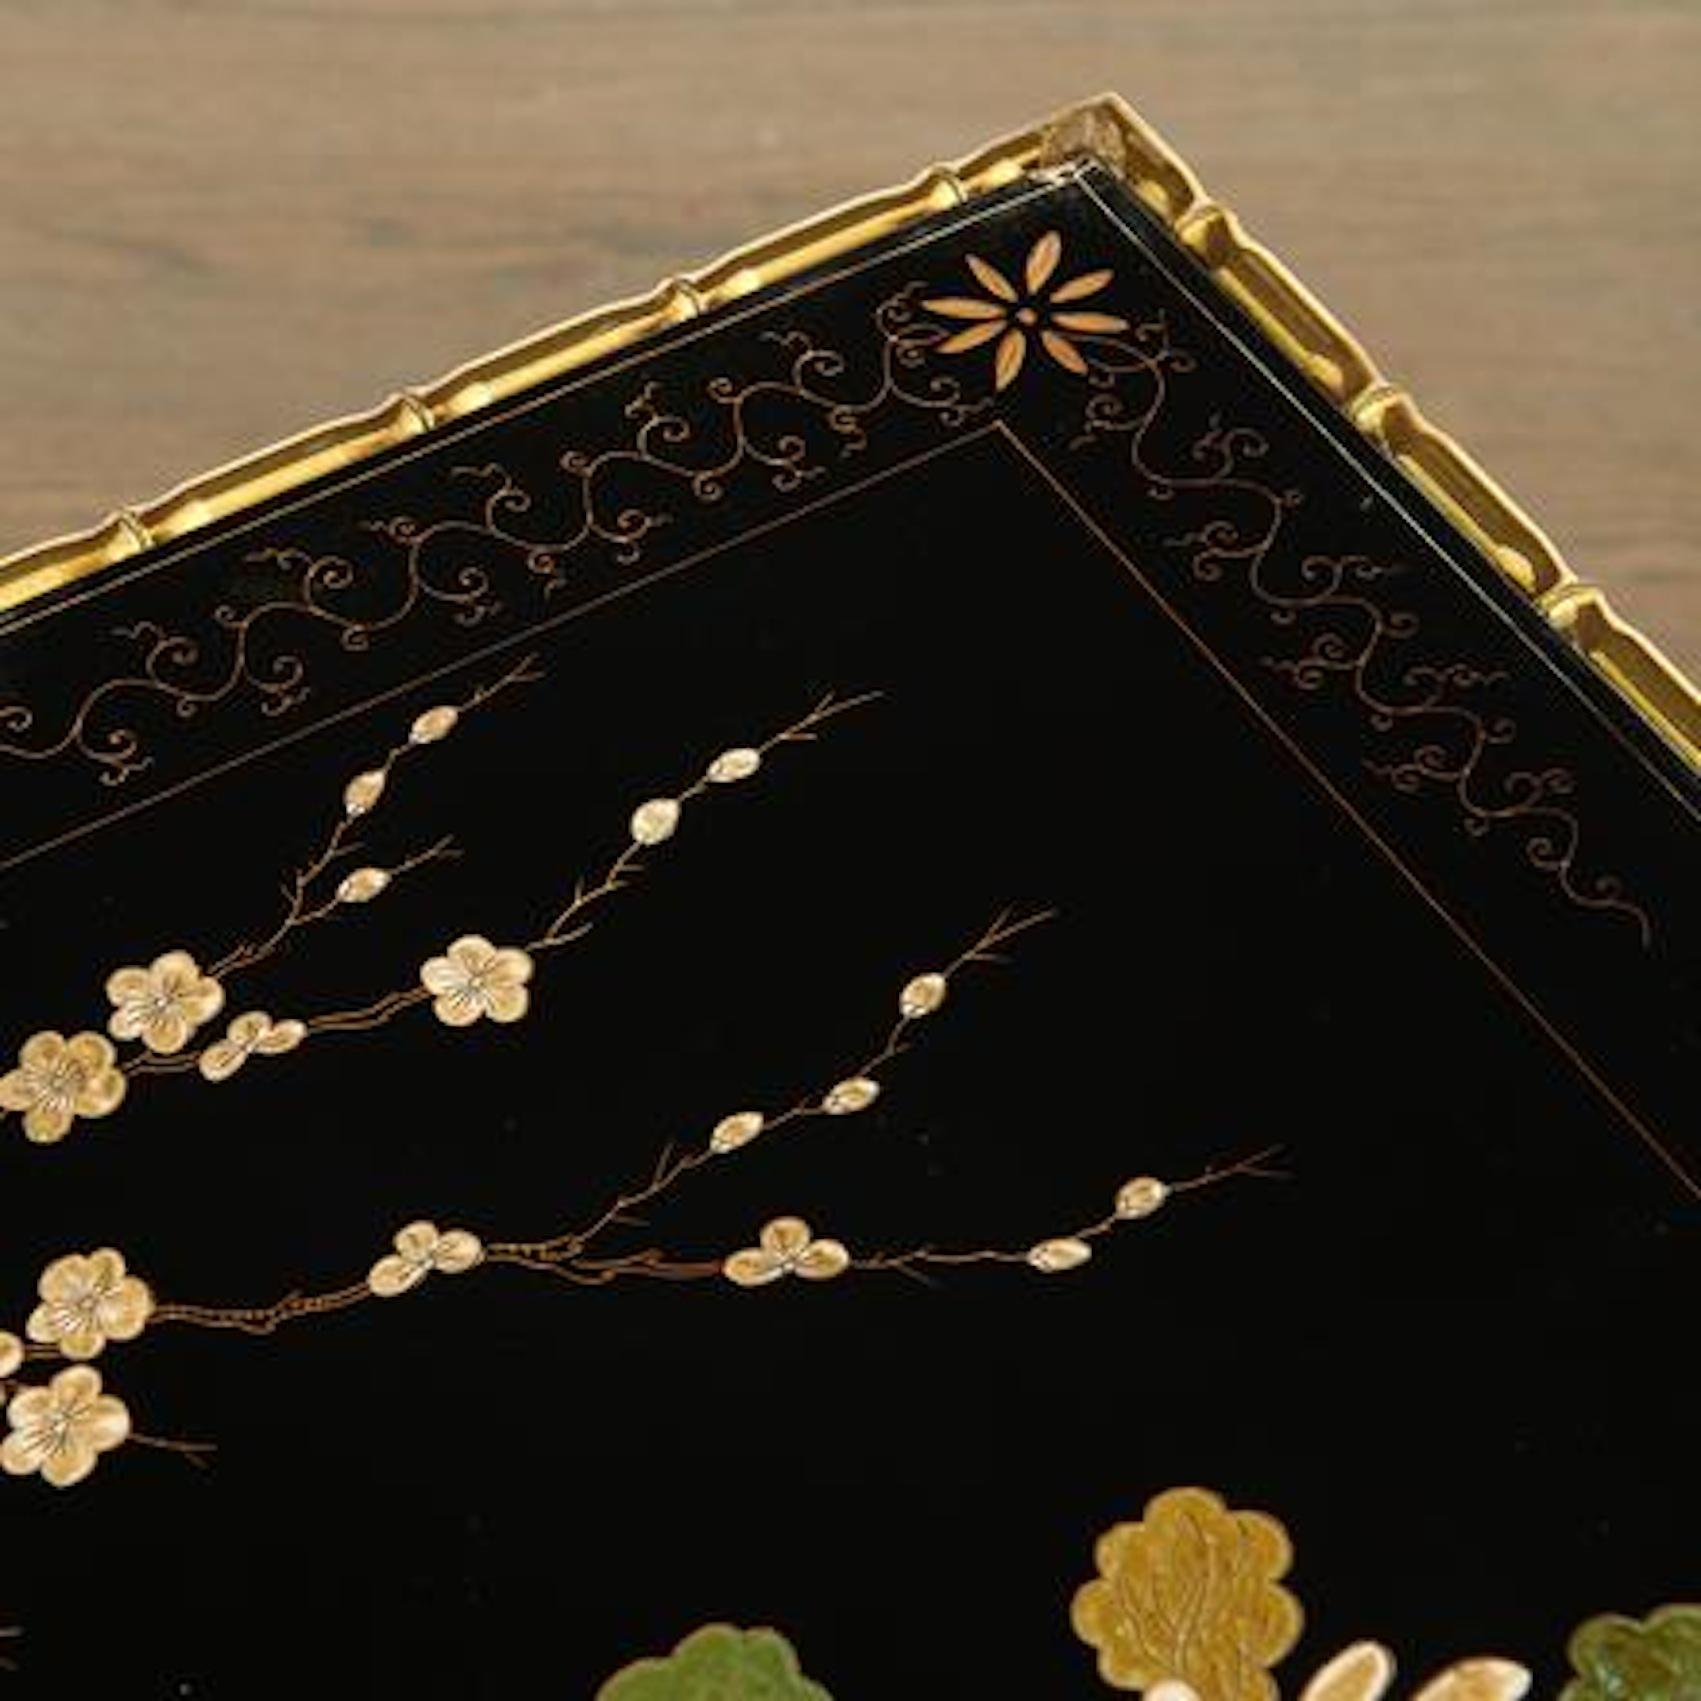 Rara mesa de centro de bronce dorado imitación bambú de Maison Baguès, tapa lacada en negro con motivos de crisantemos.
  